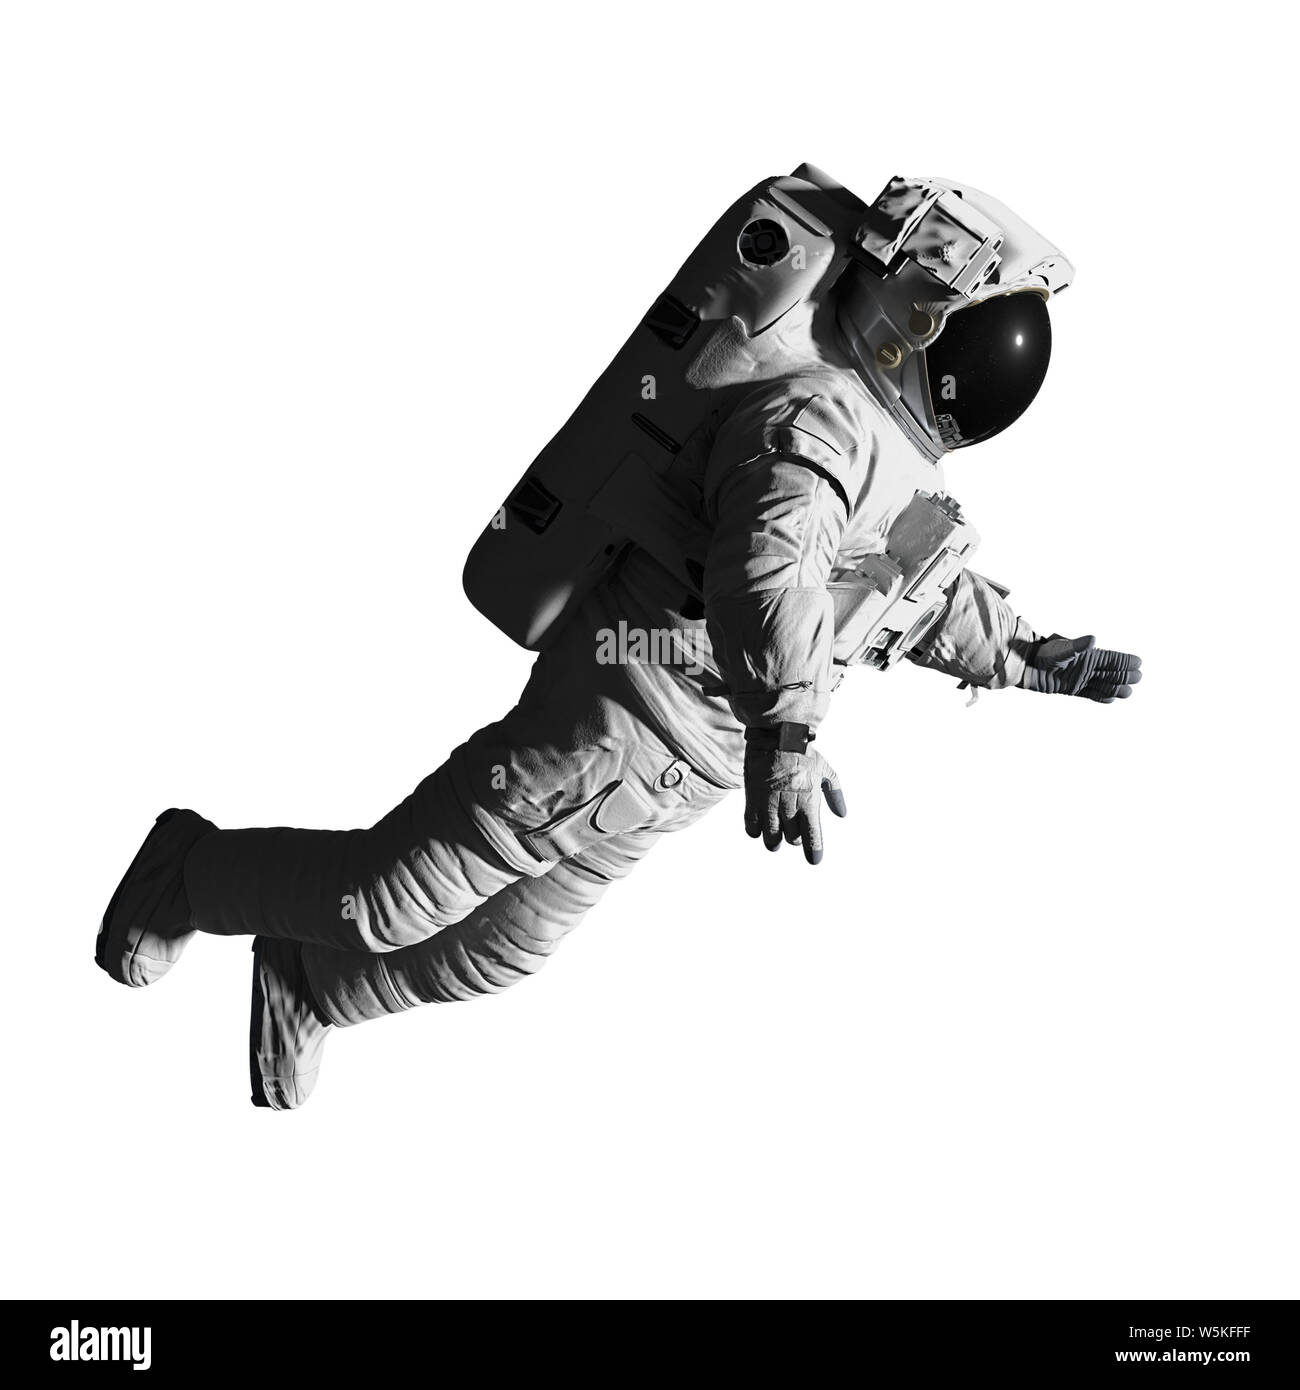 L'astronaute marcher dans l'espace, isolé sur fond blanc Banque D'Images